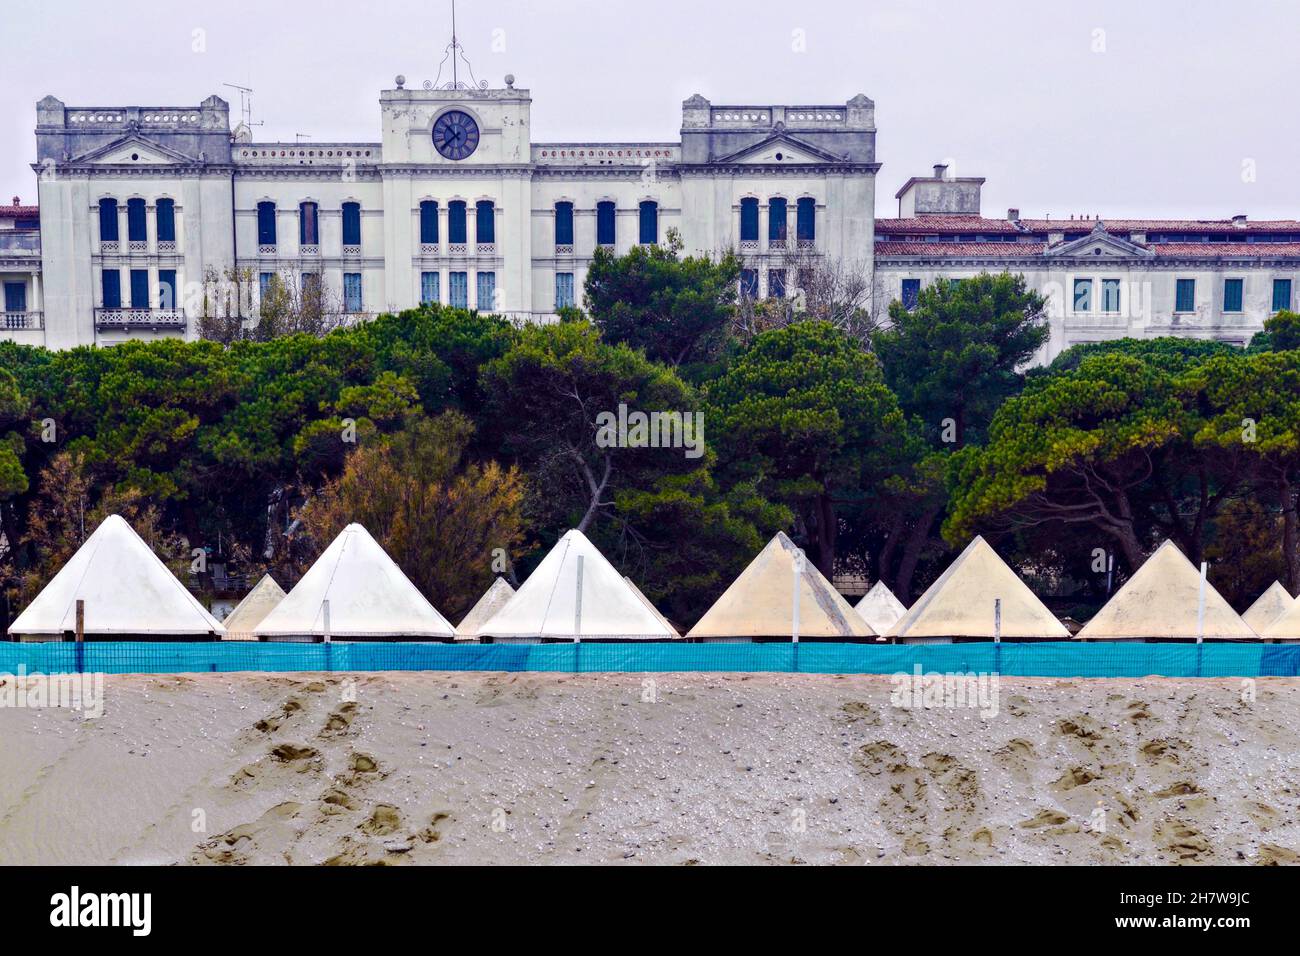 Vista desde la playa de Lido en el Grand Hotel des Bains, el escenario de la película para la novela 'Muerte en Venecia' de Thomas Mann. En las casas de playa en primer plano. Foto de stock